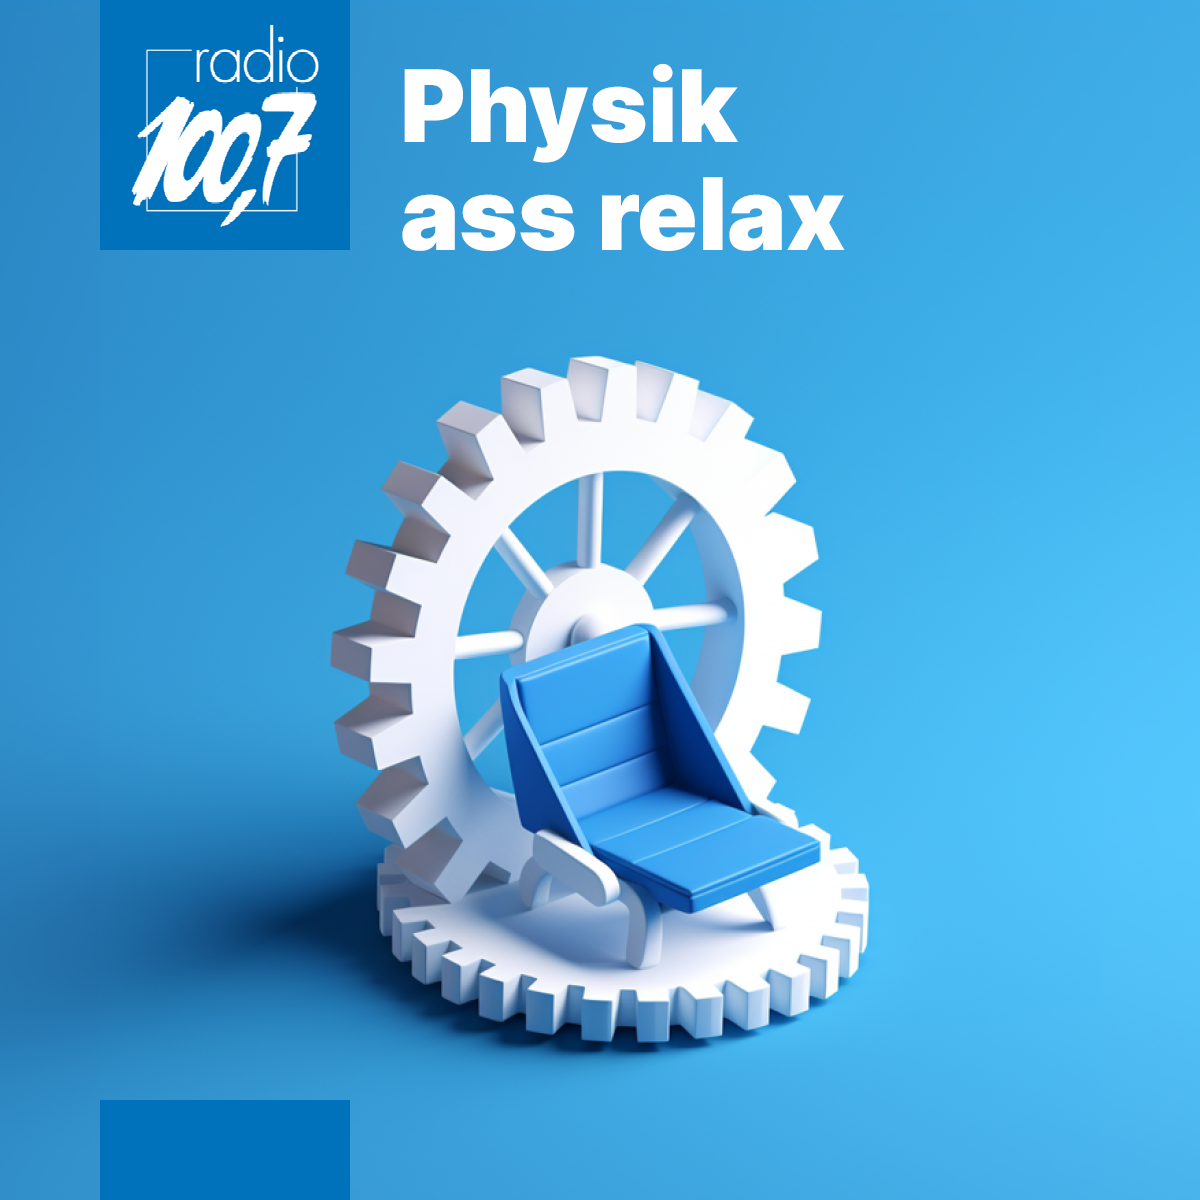 Physik ass relax